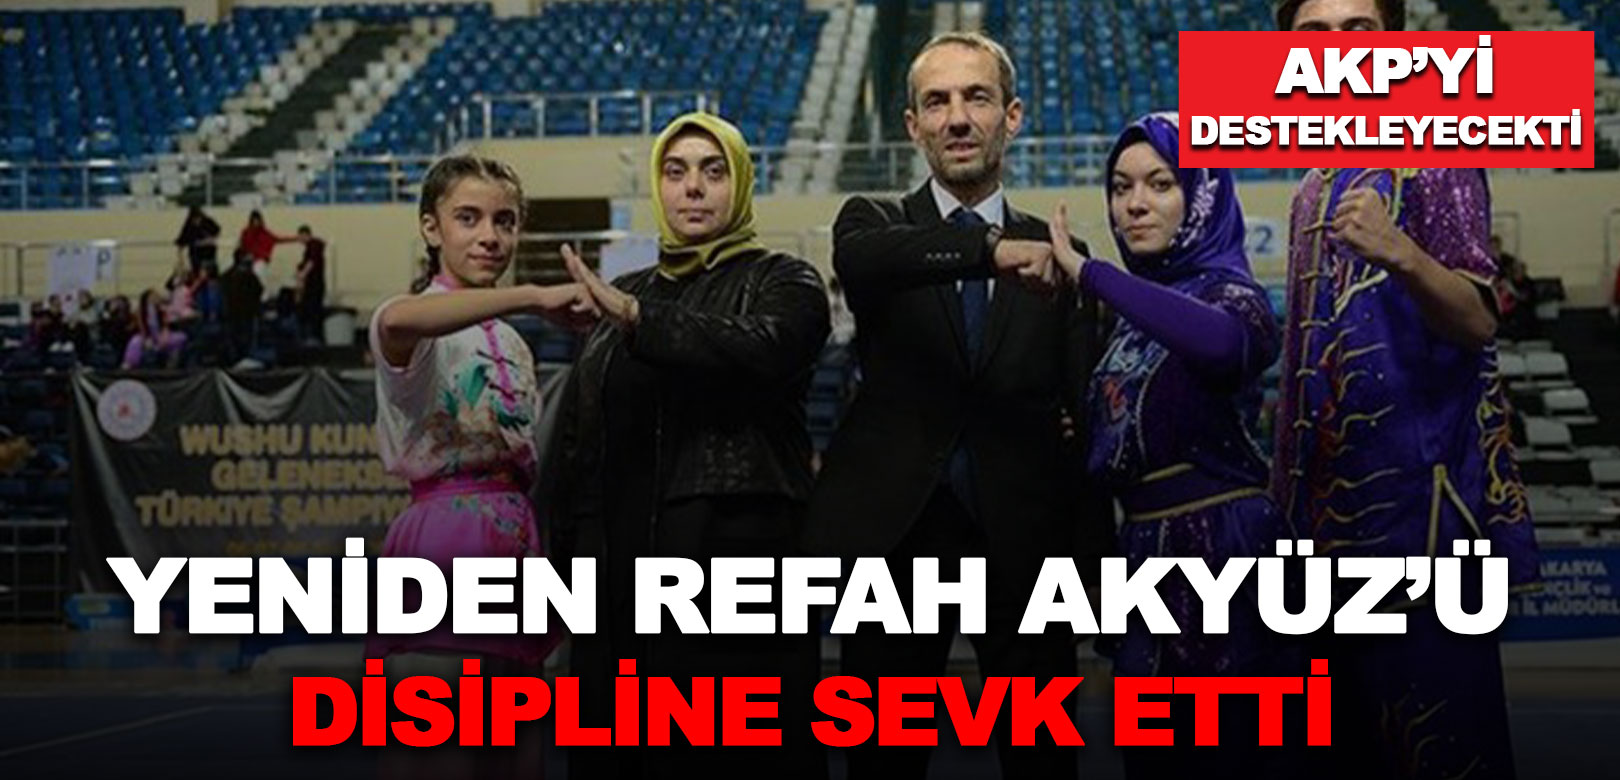 AKP'yi destekleyeceğini açıklayan YRP yöneticisi Akyüz partisi tarafından disipline sevk edildi